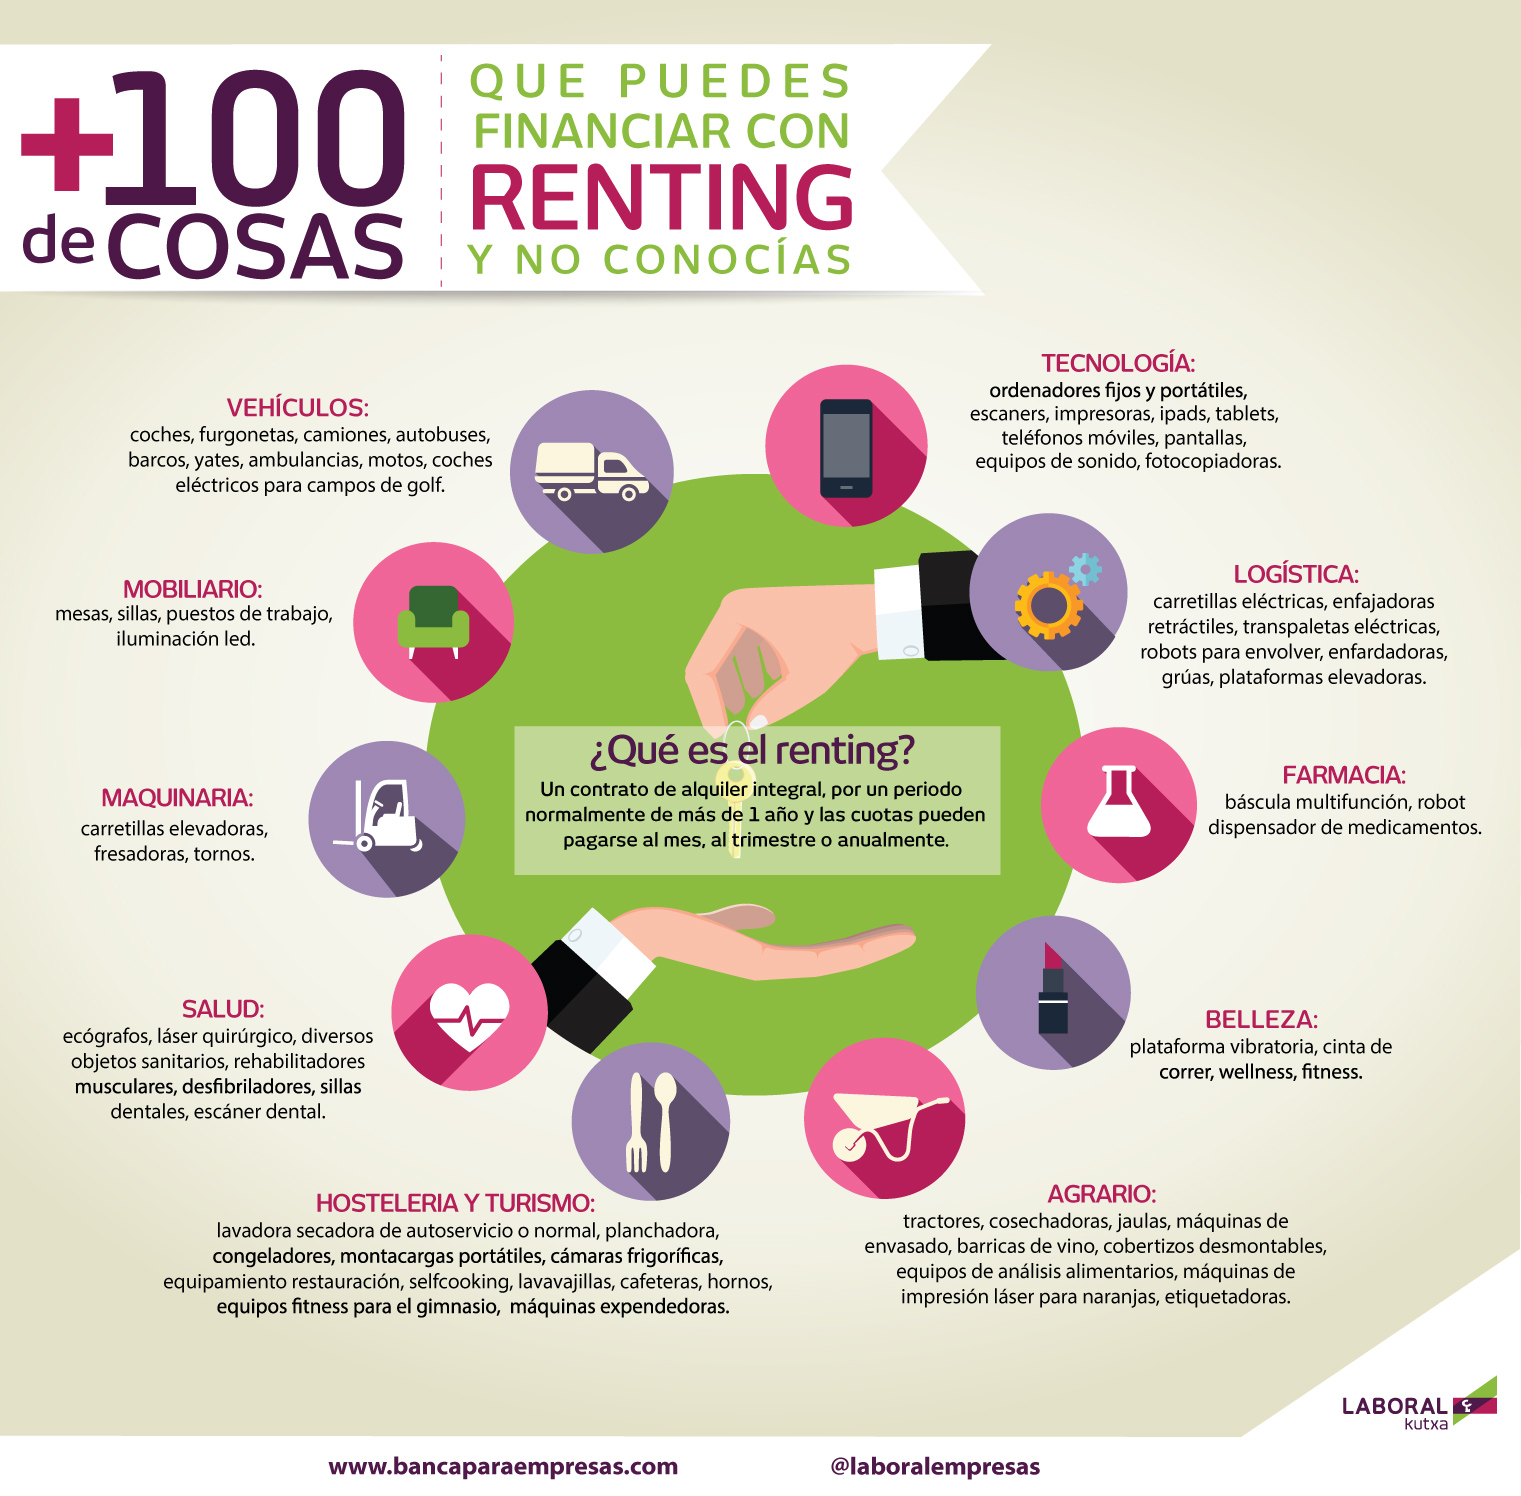 ¿Qué cosas puedes financiar a través del renting?